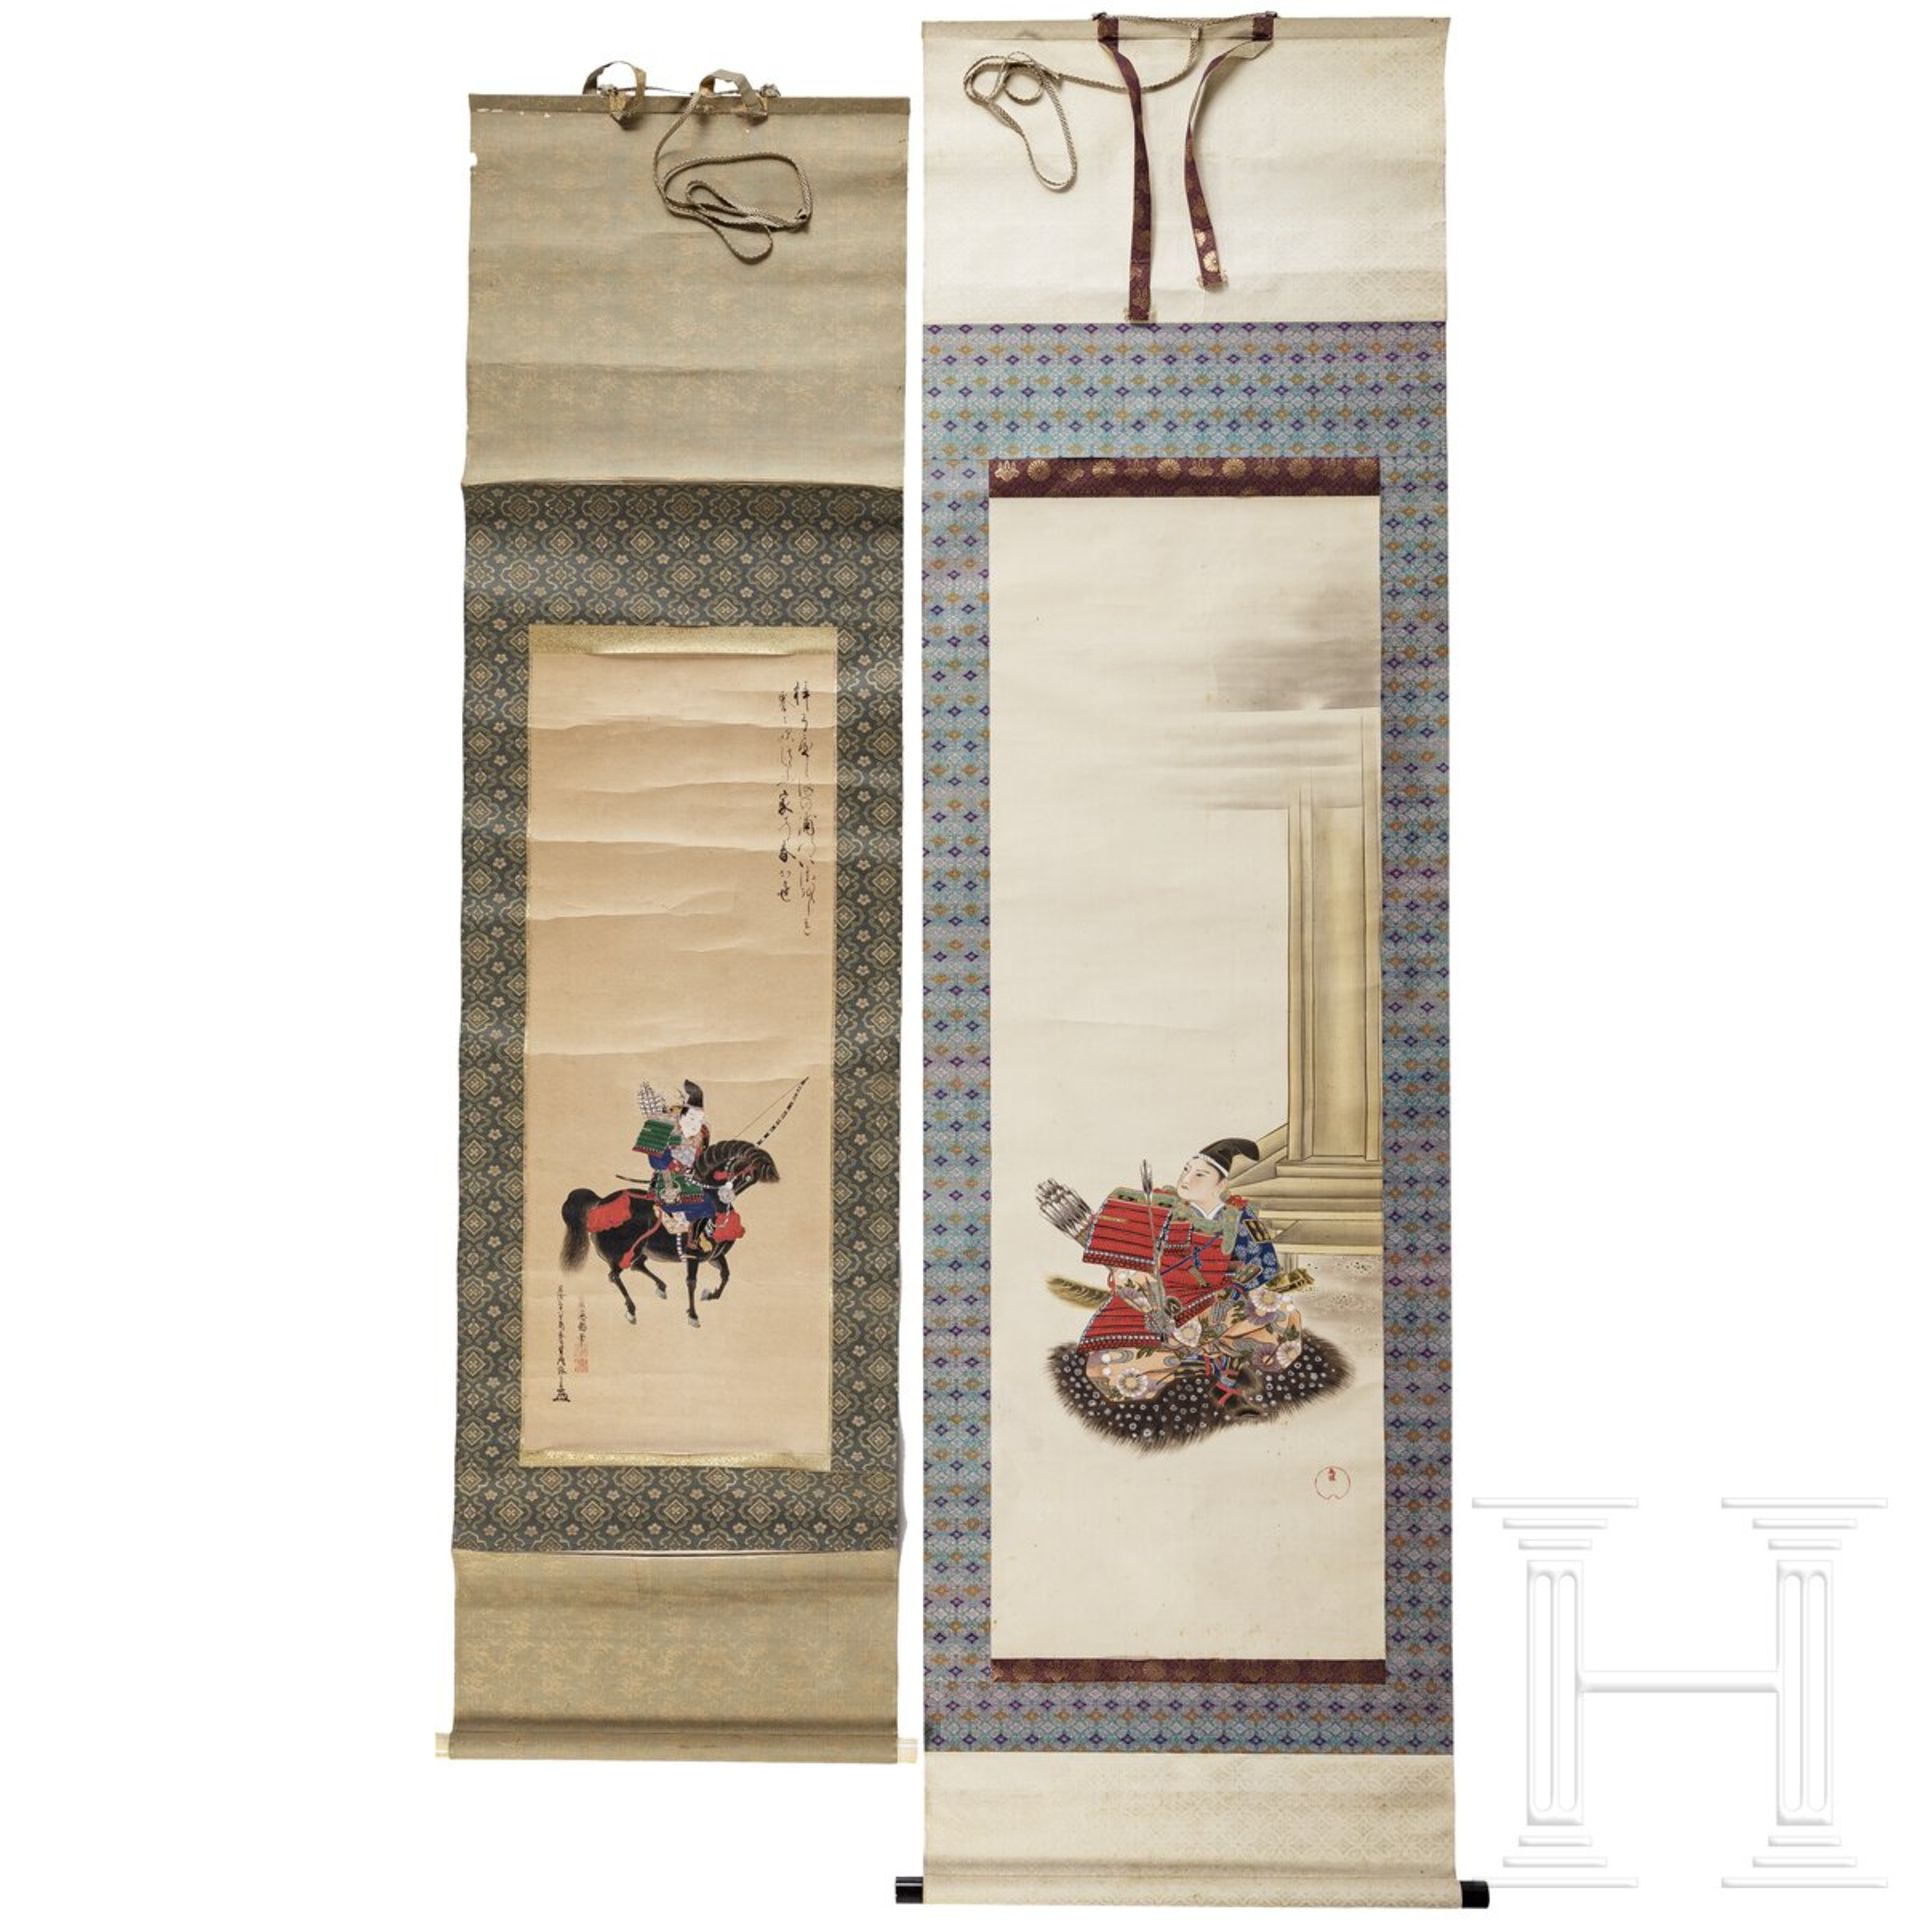 Zwei japanische Kakemono-Rollbilder mit Samurais, Edo-/Meiji-Zeit